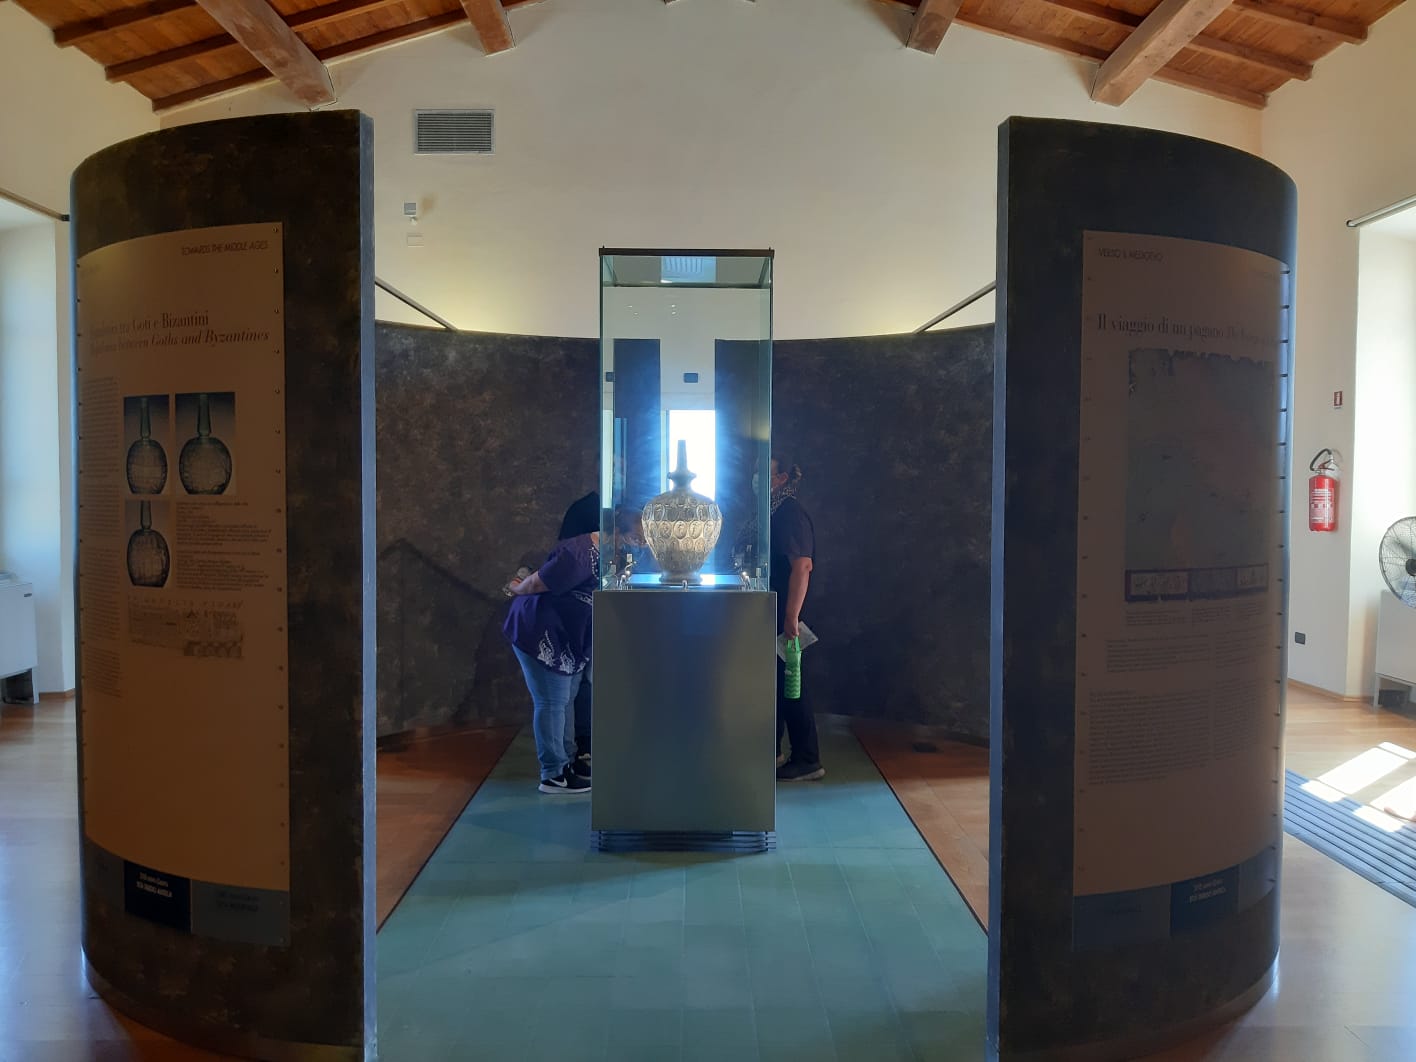 Visita speciale con l'archeologo al Museo del territorio di Populonia a Piombino